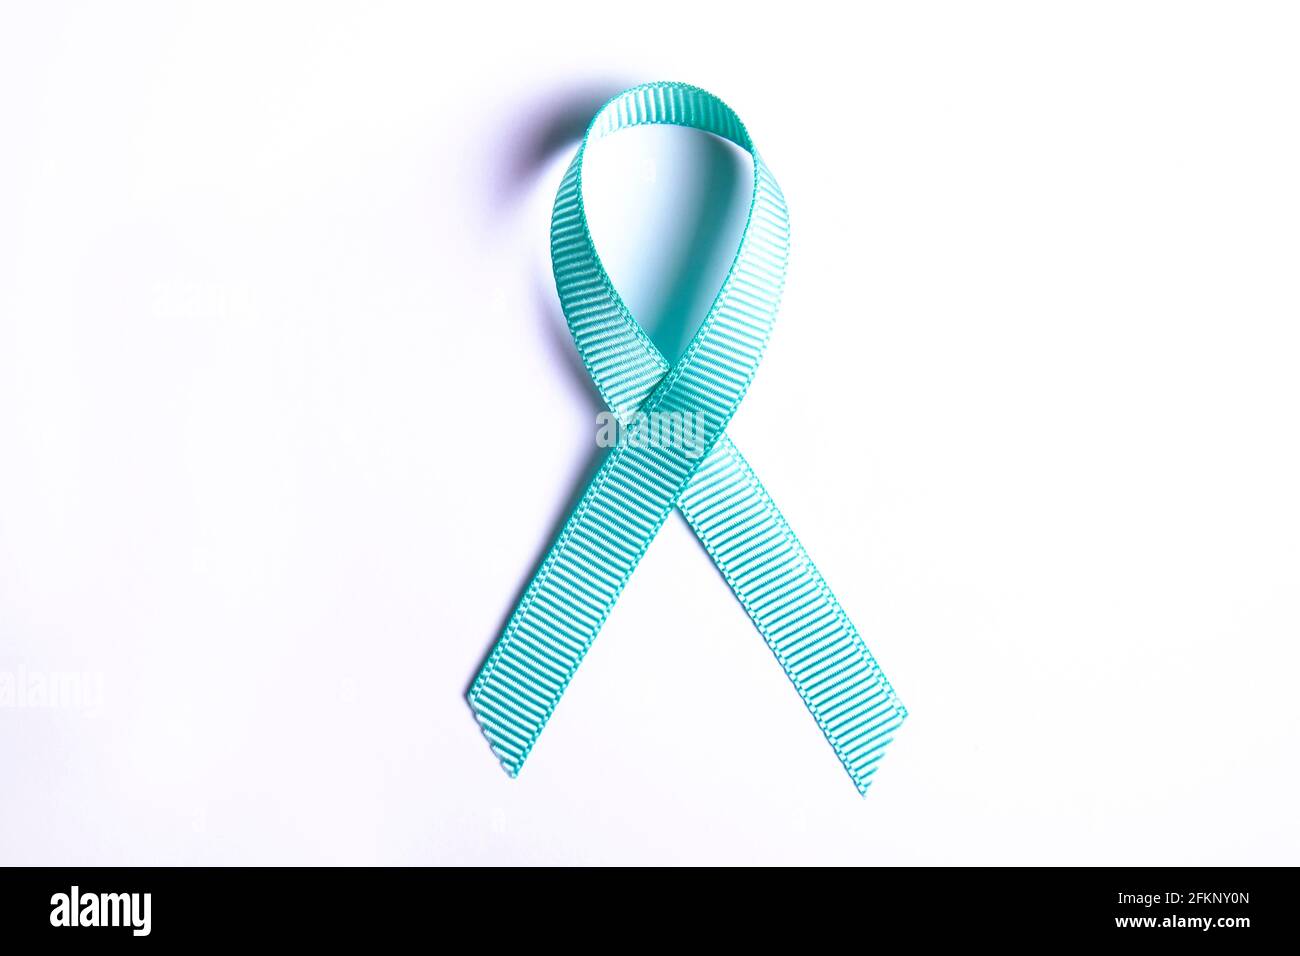 Nastro di consapevolezza blu - simbolo per combattere il cancro della prostata, sostenere i sopravvissuti e la consapevolezza dell'abuso di bambini. Isolato su sfondo bianco, spazio di copia Foto Stock